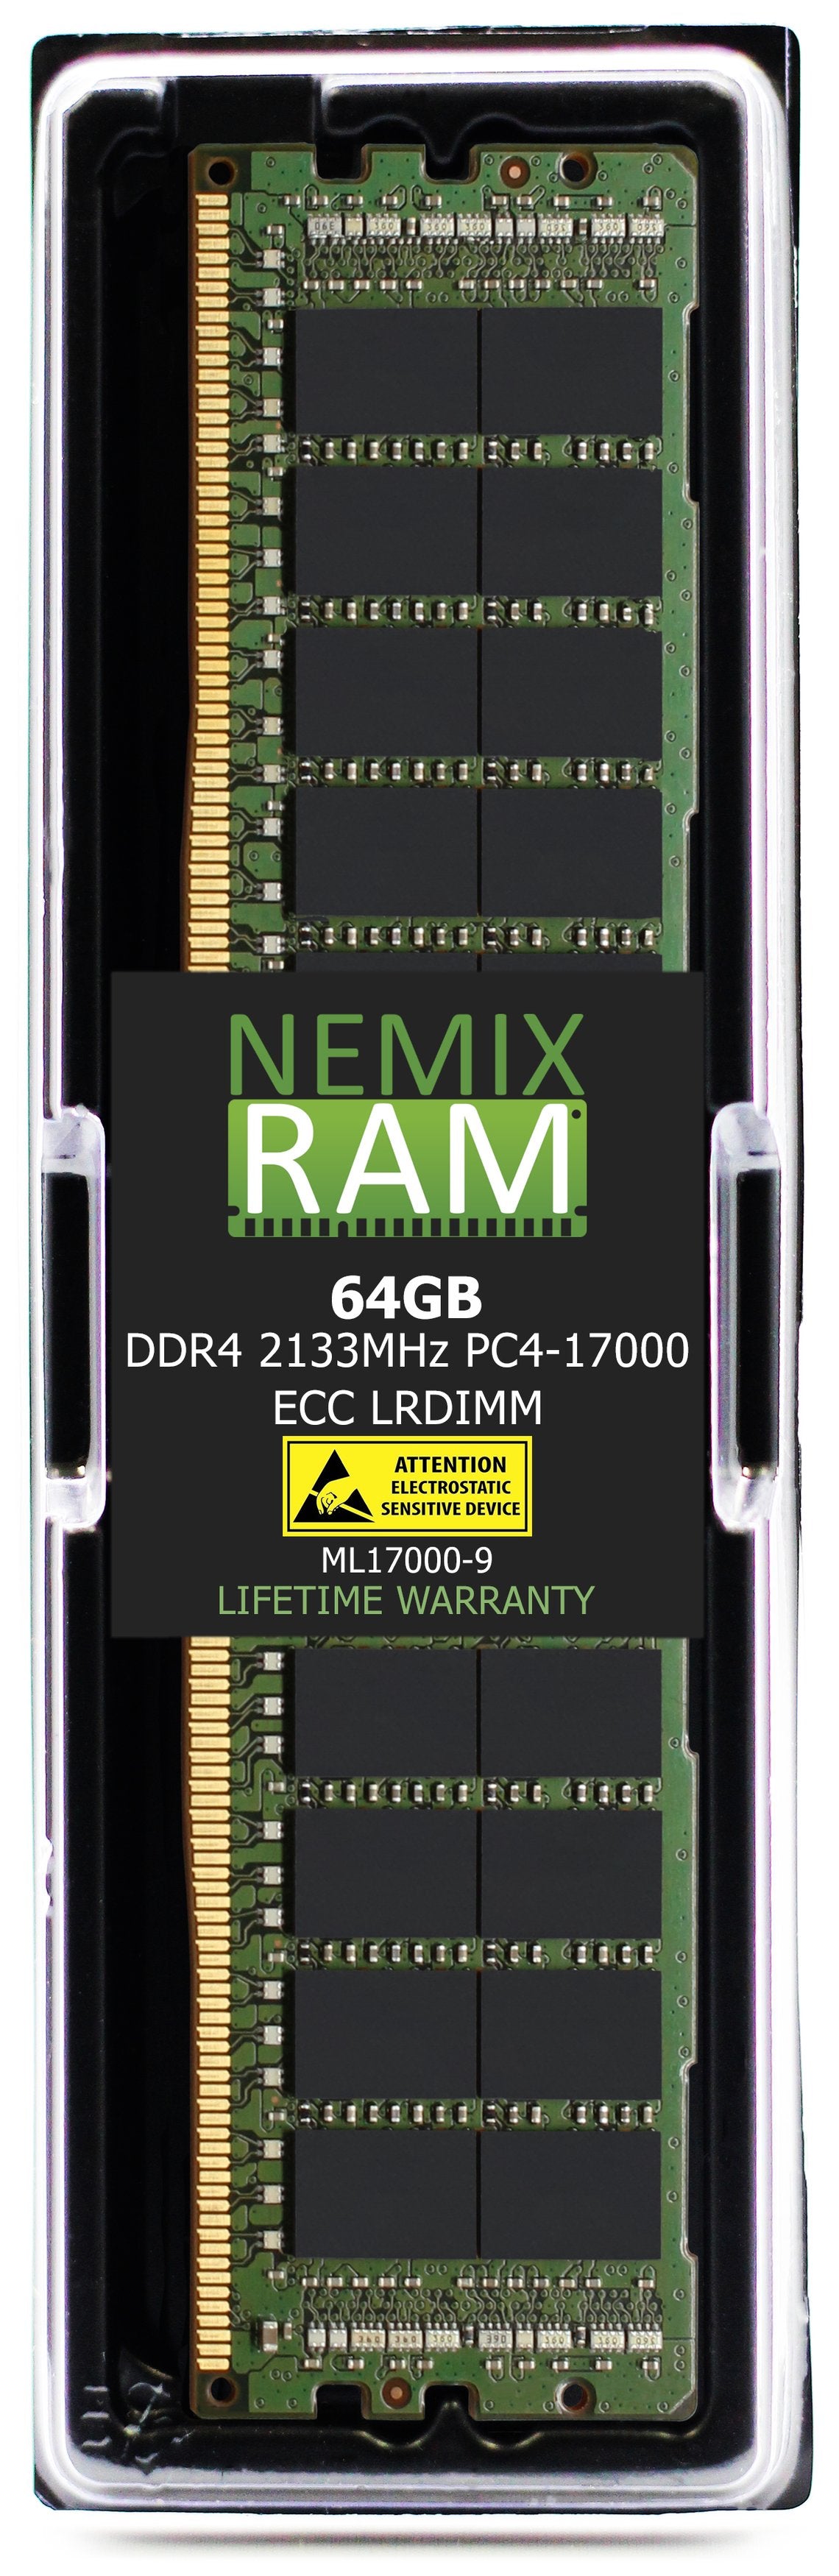 64GB DDR4 2133MHZ PC4-17000 LRDIMM Compatible with Supermicro MEM-DR464L-SL01-LR21